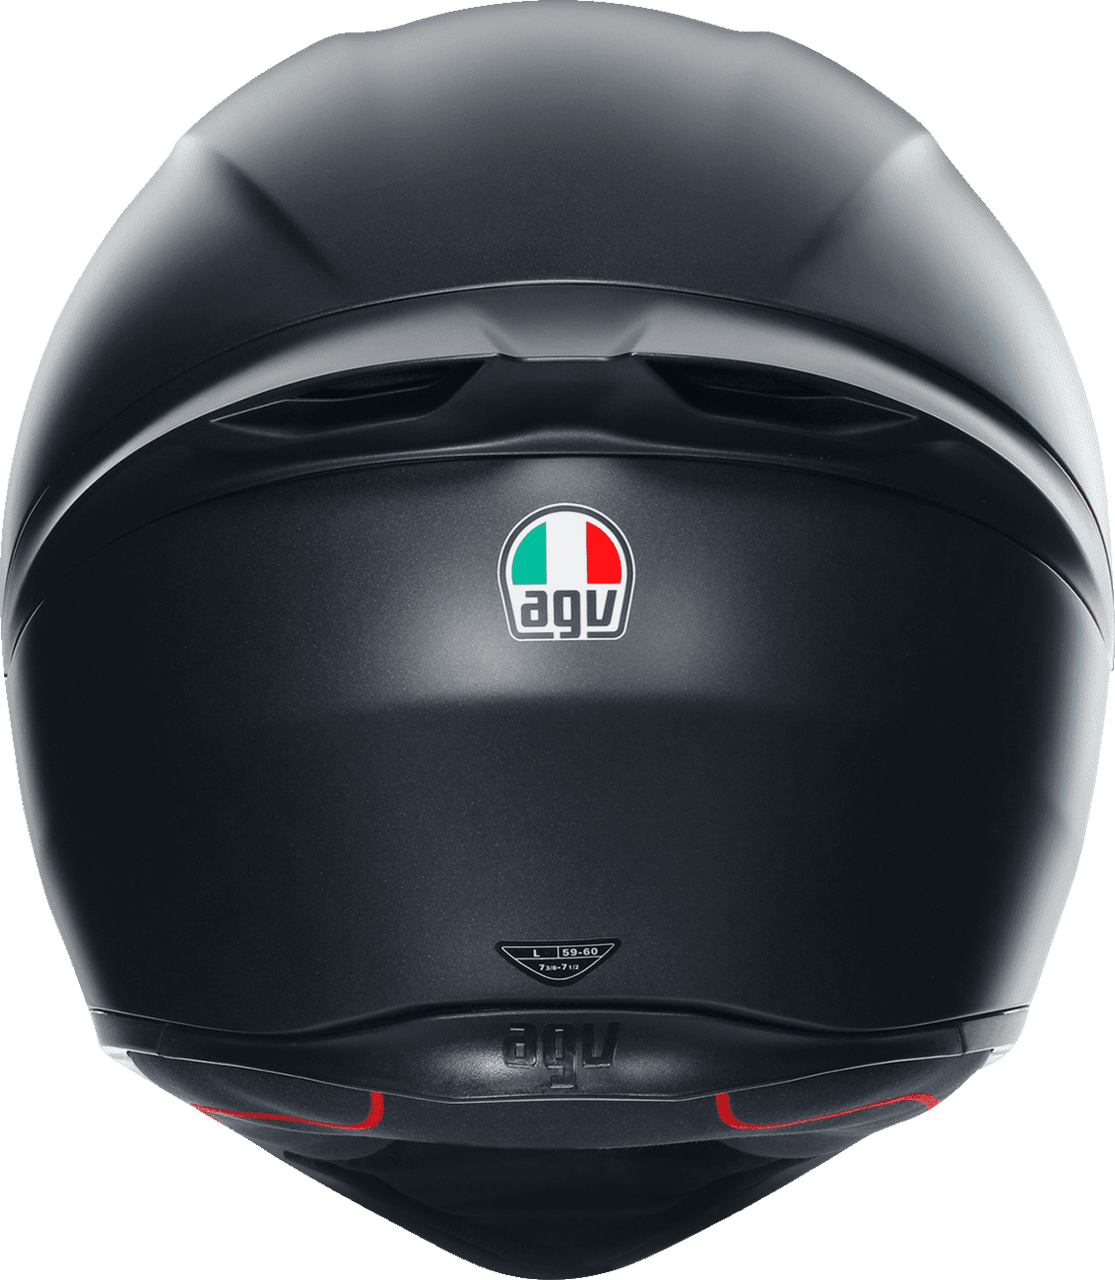 AGV AGV K1 S Blipper Full-Face Helmet low-cost